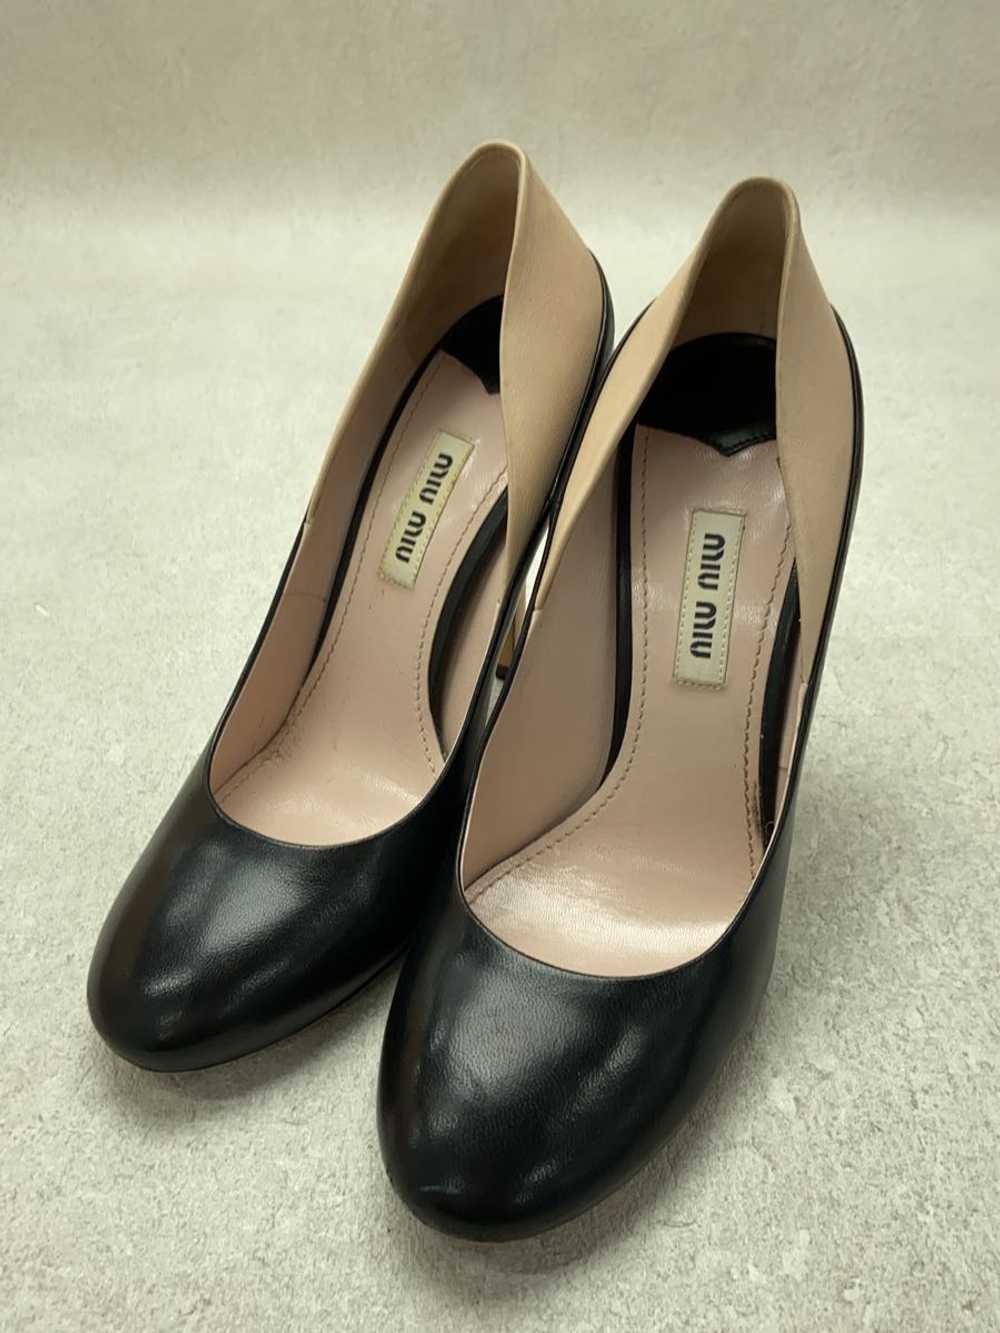 Miu Miu Pumps/36/Black Shoes Bbd69 - image 2